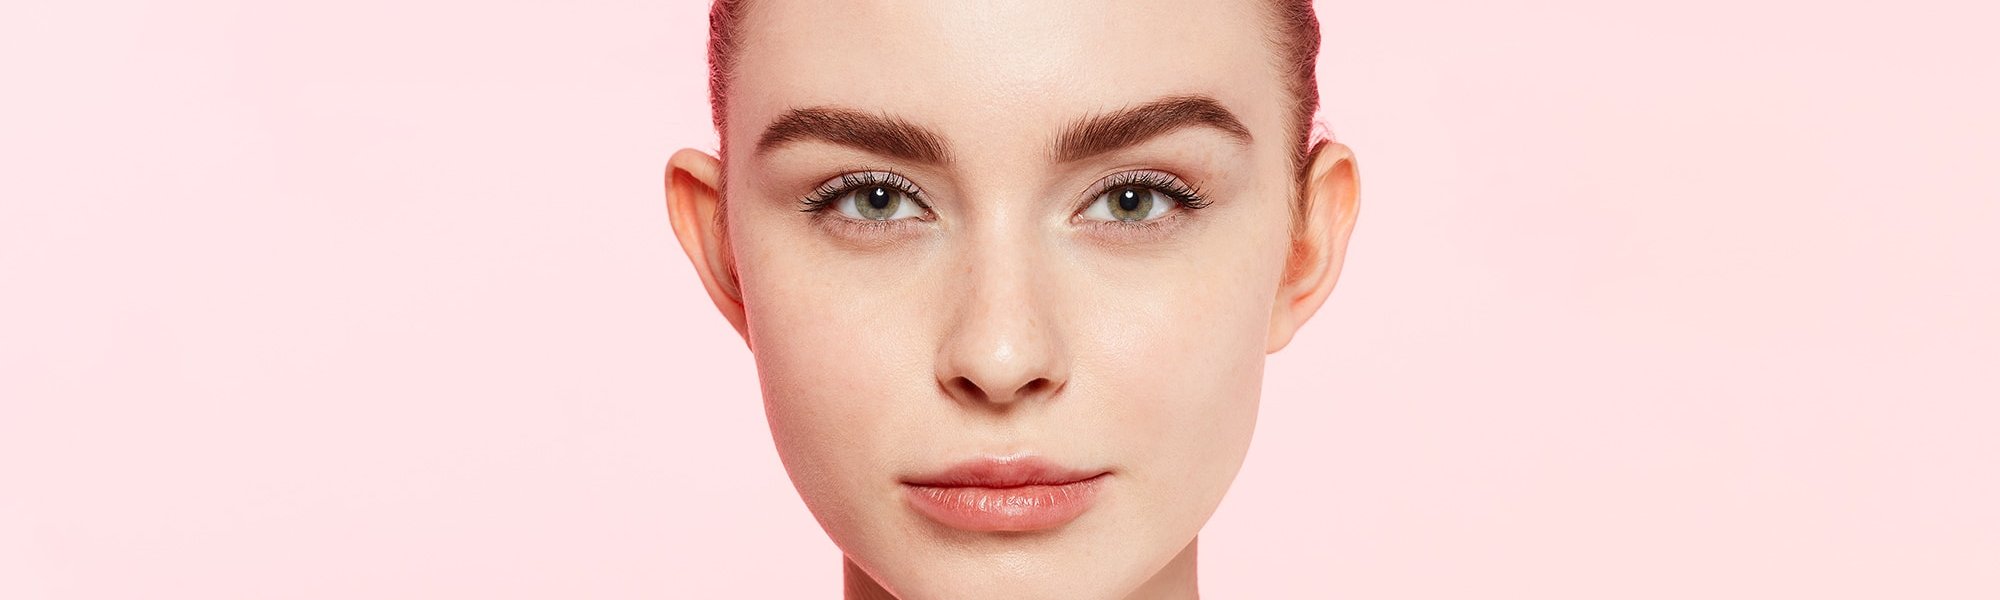 Junge Frau mit Augenbrauen Make-up vor rosa Wand